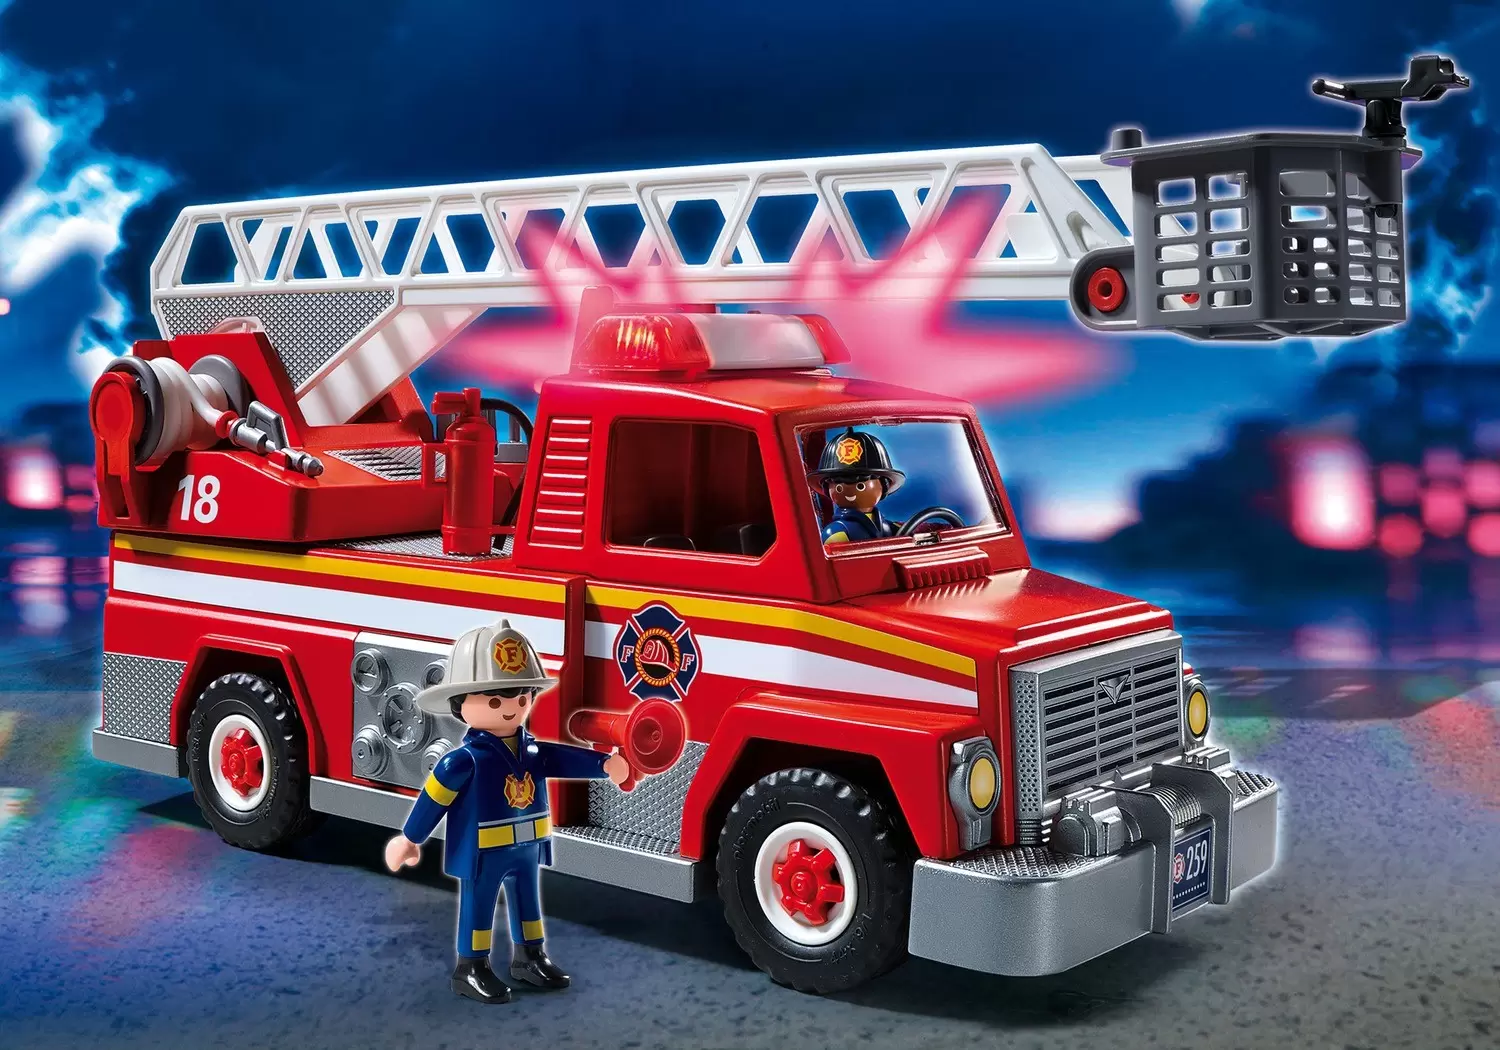 https://thumbs.coleka.com/media/item/201907/21/playmobil-pompier-playmobil-5682-city-action-camion-de-pompiers-13-pc-5682.webp